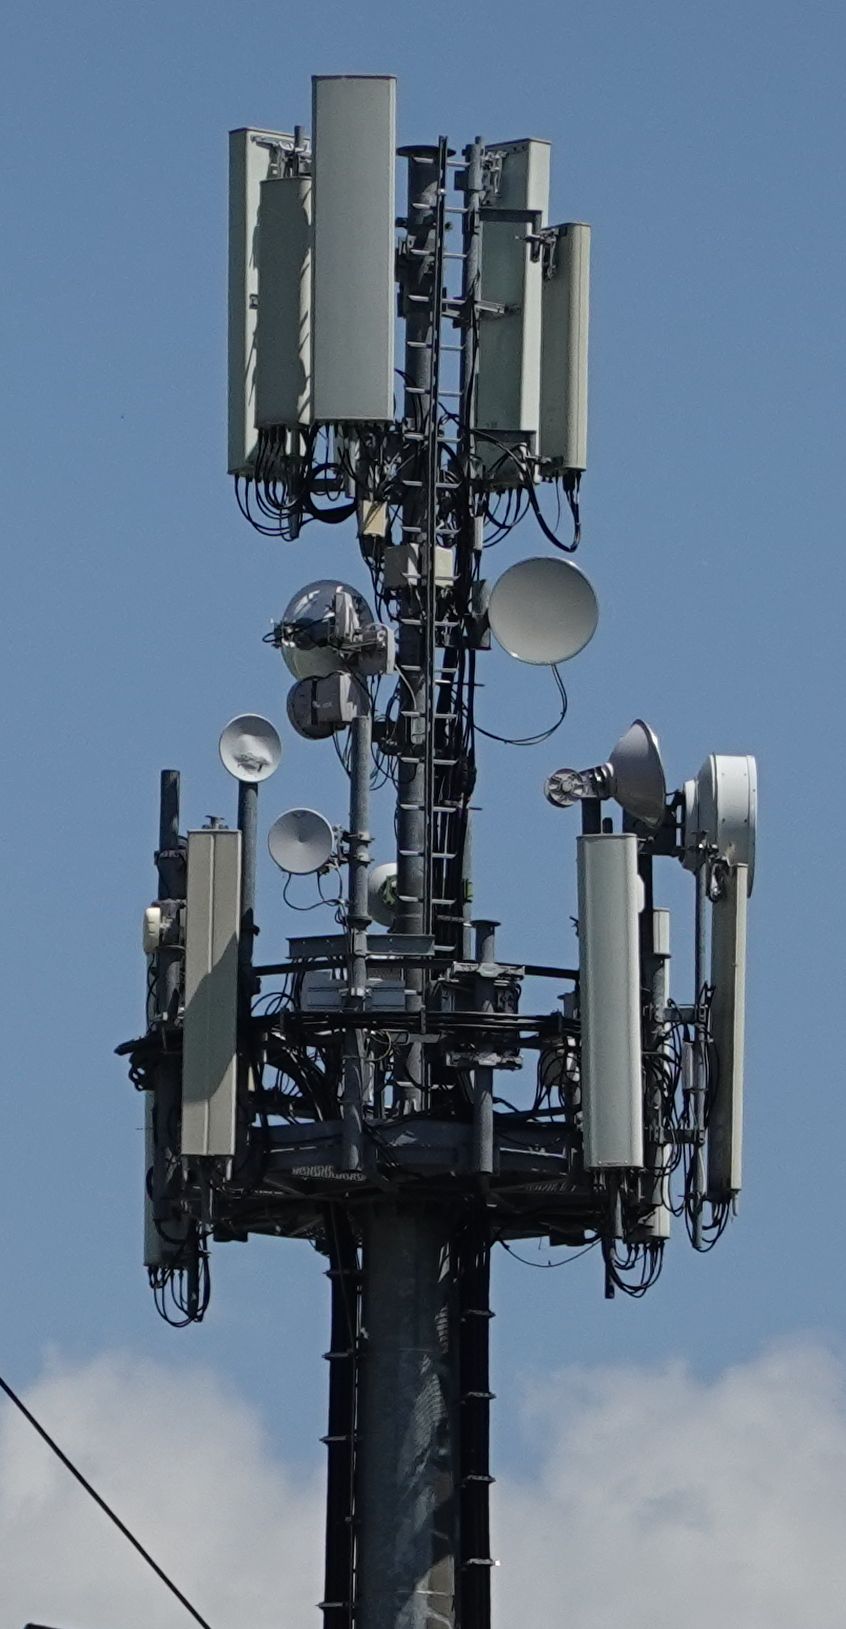 Die Antennen von Tim, Vodafone und Wind3 im Juni. Die Antennen von H3G auf dem Nachbarlichtmast sind abgebaut.2021